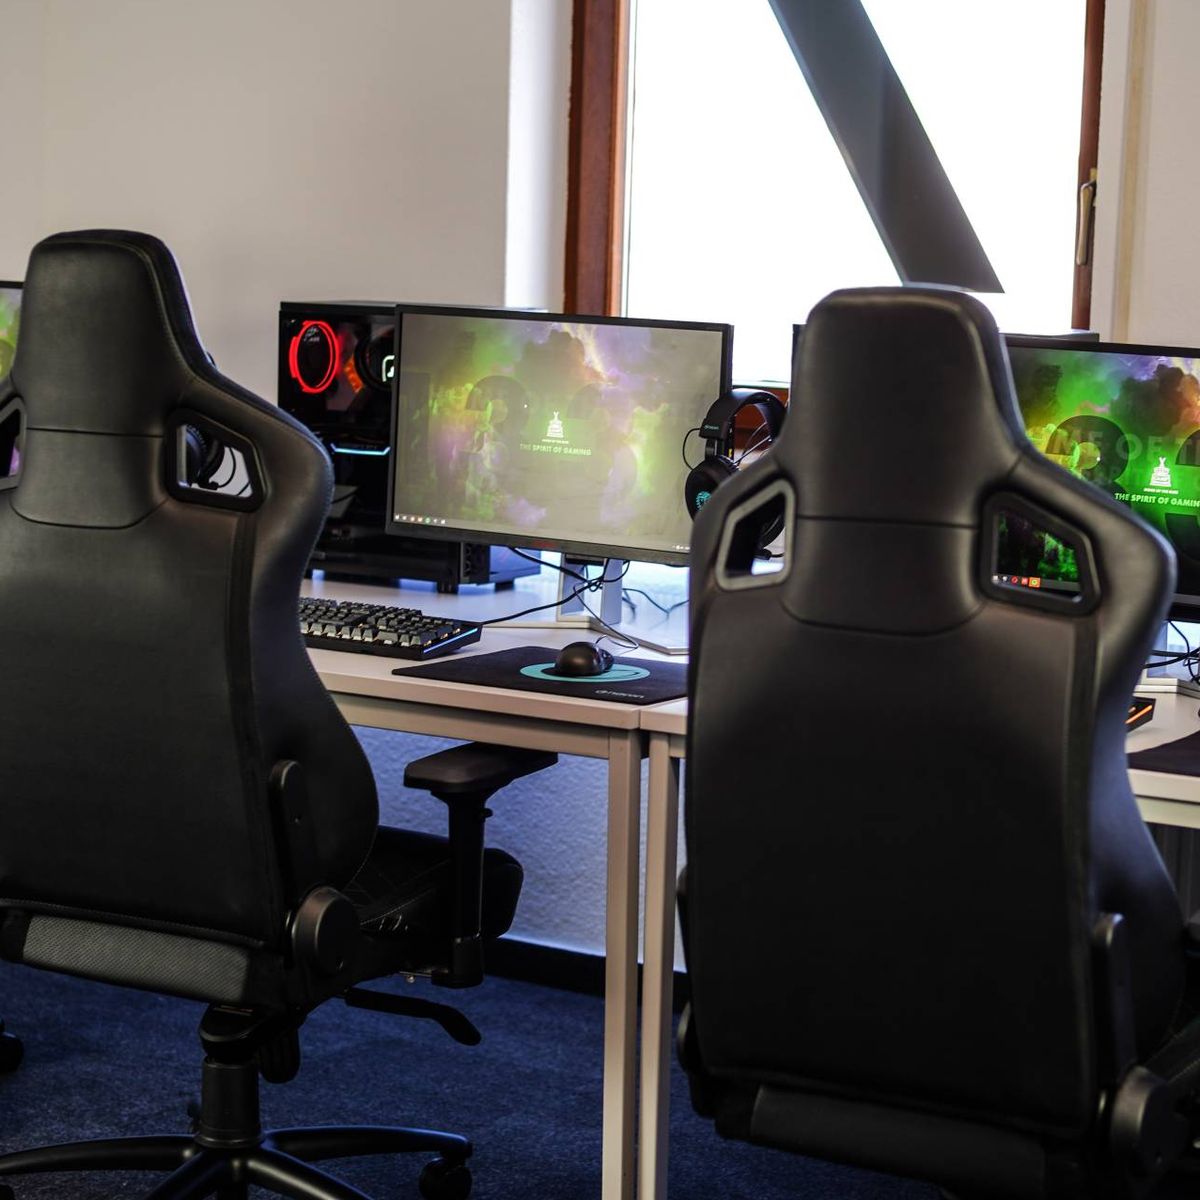 Silla de escritorio para PC, silla de juegos de computadora, sillas de  juegos de carreras, silla de oficina ajustable de piel sintética, silla